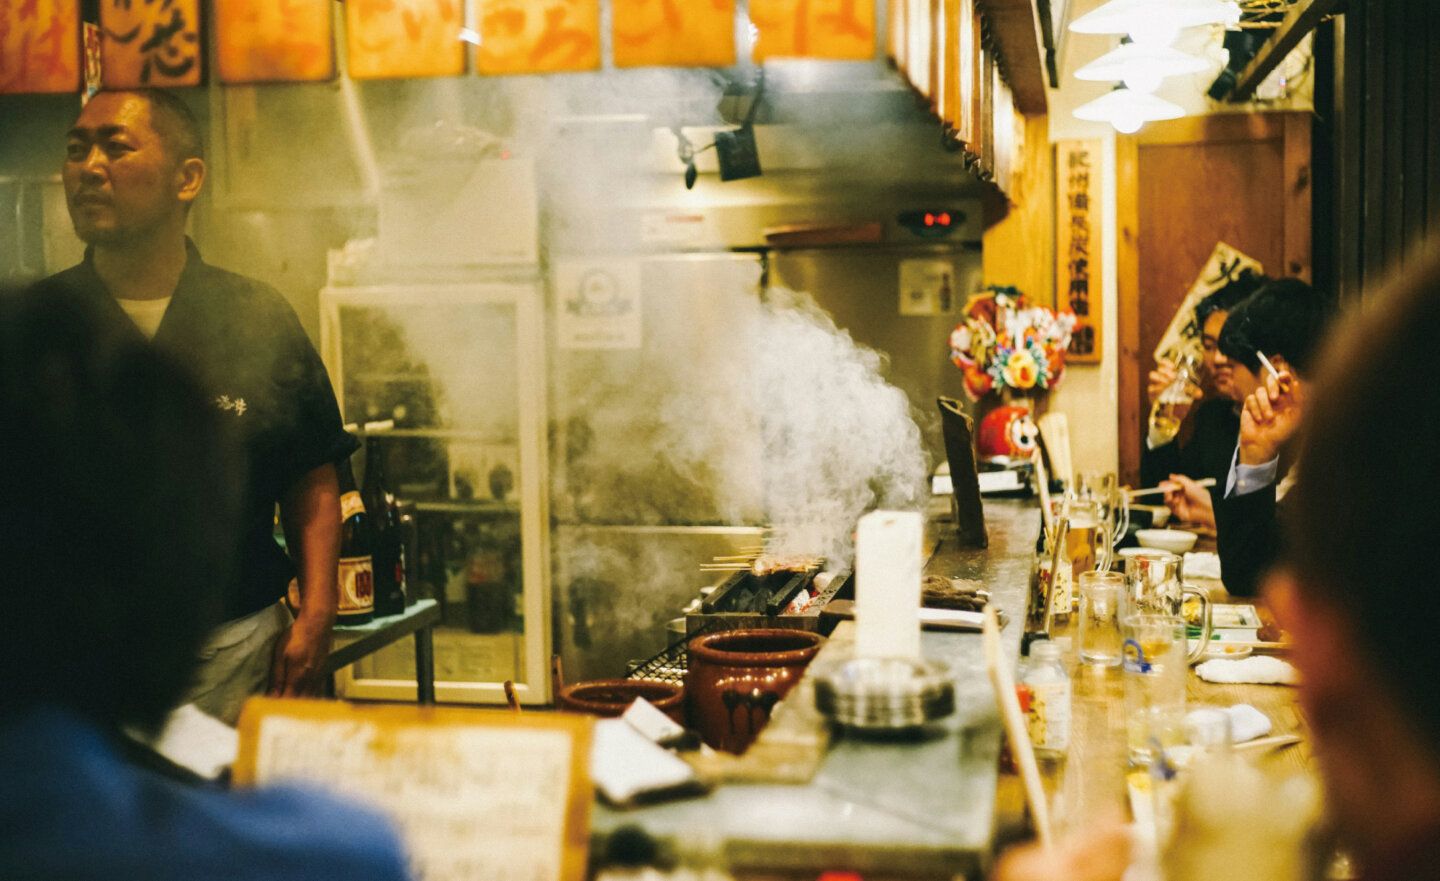 Kakaku.com 推出適合海外遊客的日本餐廳預訂服務